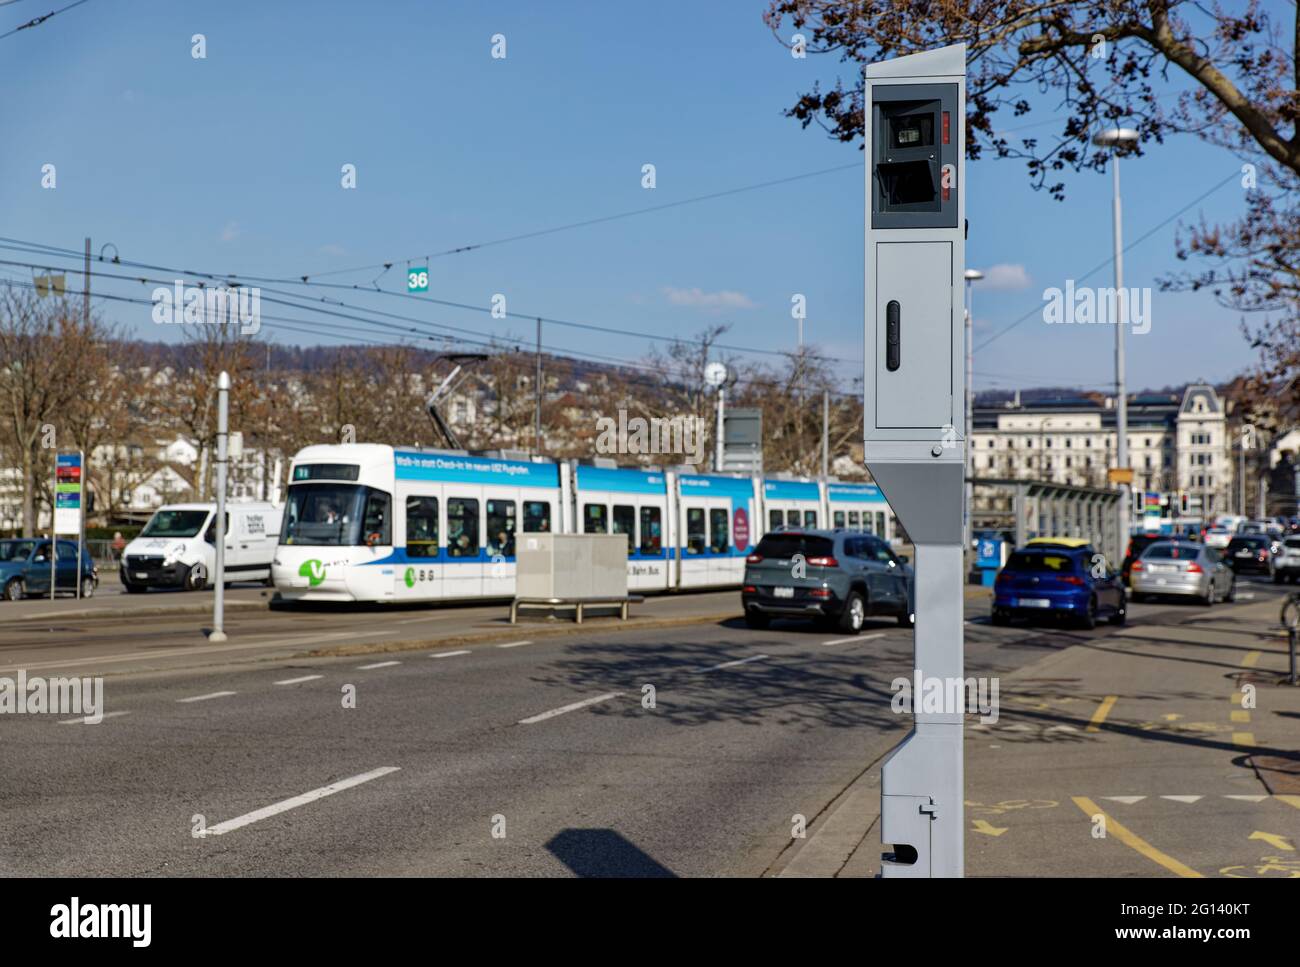 Zürich Schweiz 10. März 2021: Stationäre Radargeschwindigkeitskamera,  Kamera in der Großstadt mit Autos und Menschen und Strassenbahn im  verschwommenen Hintergrund, Geschwindigkeit c Stockfotografie - Alamy